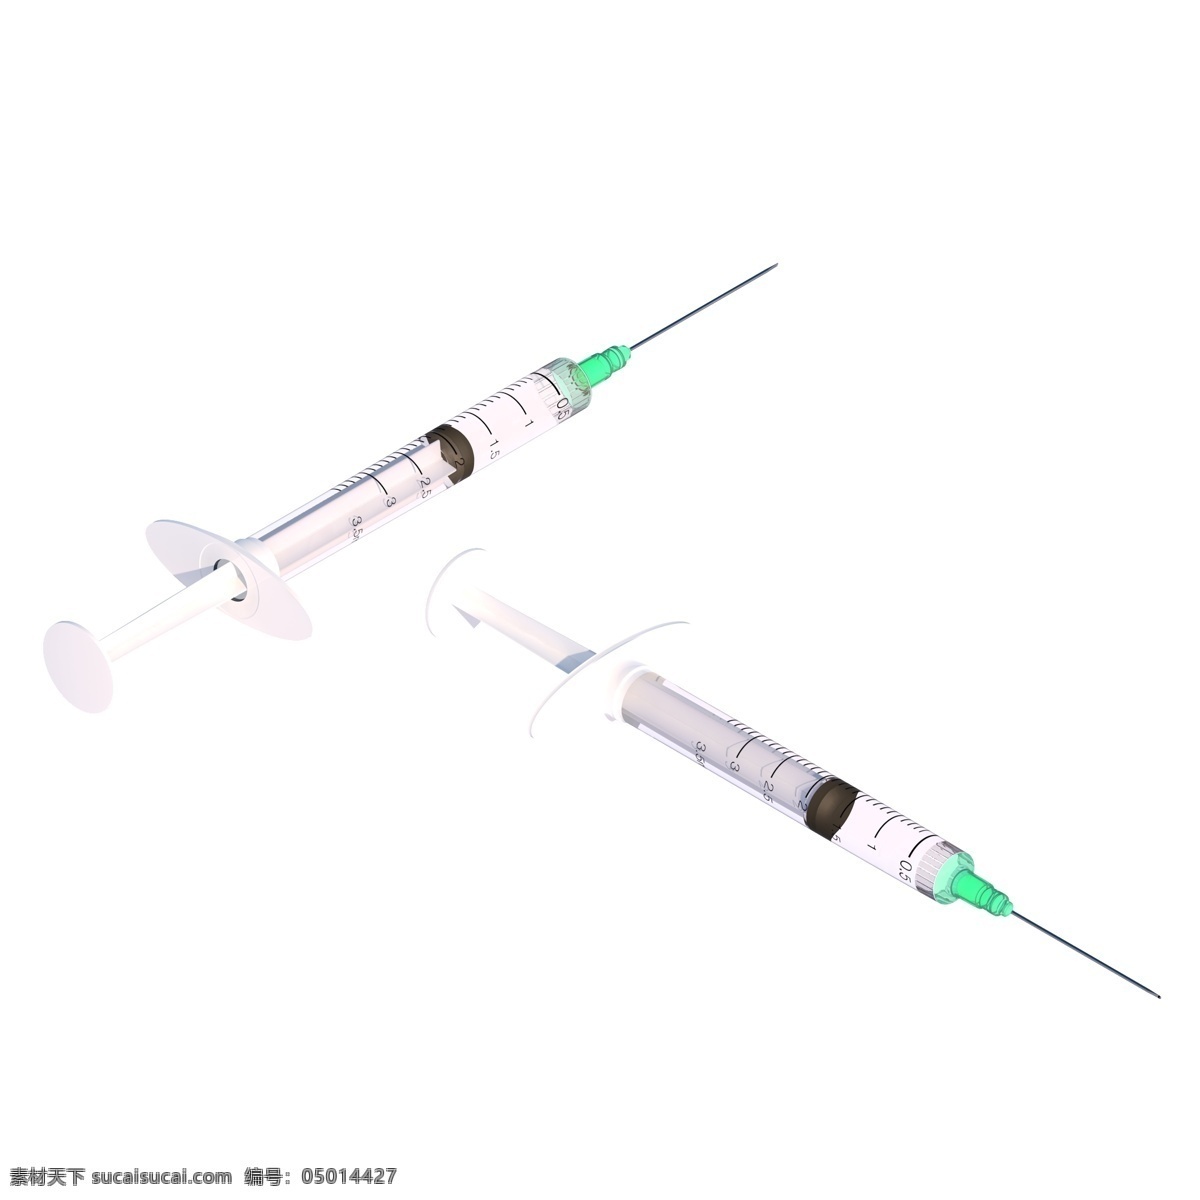 针头 针管 注射剂 医疗设备 d 医疗 设备 2.5d